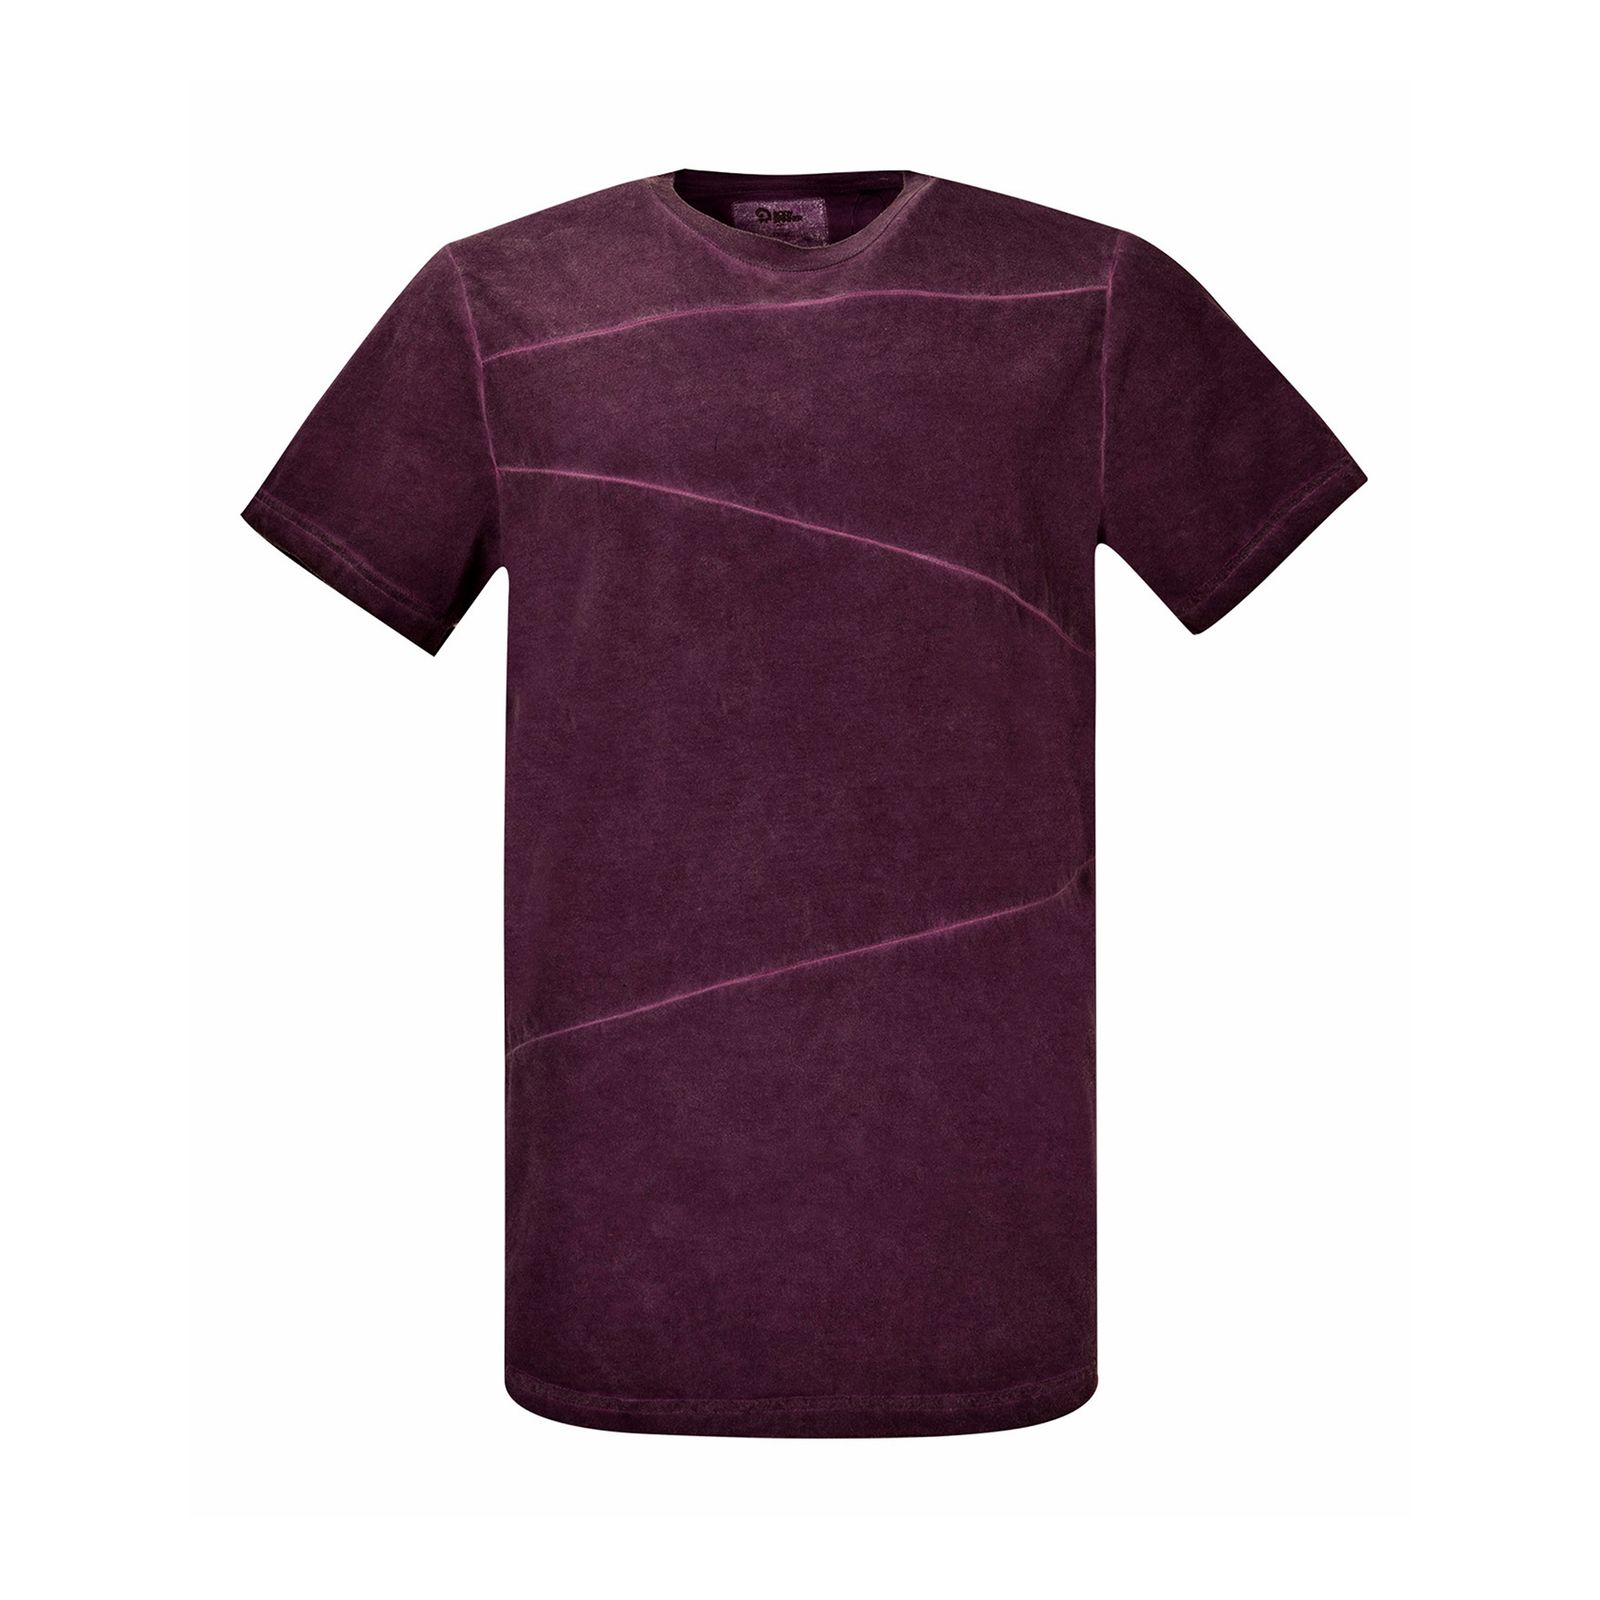 تی شرت آستین کوتاه مردانه بادی اسپینر مدل 1327 کد 1 رنگ بنفش -  - 1